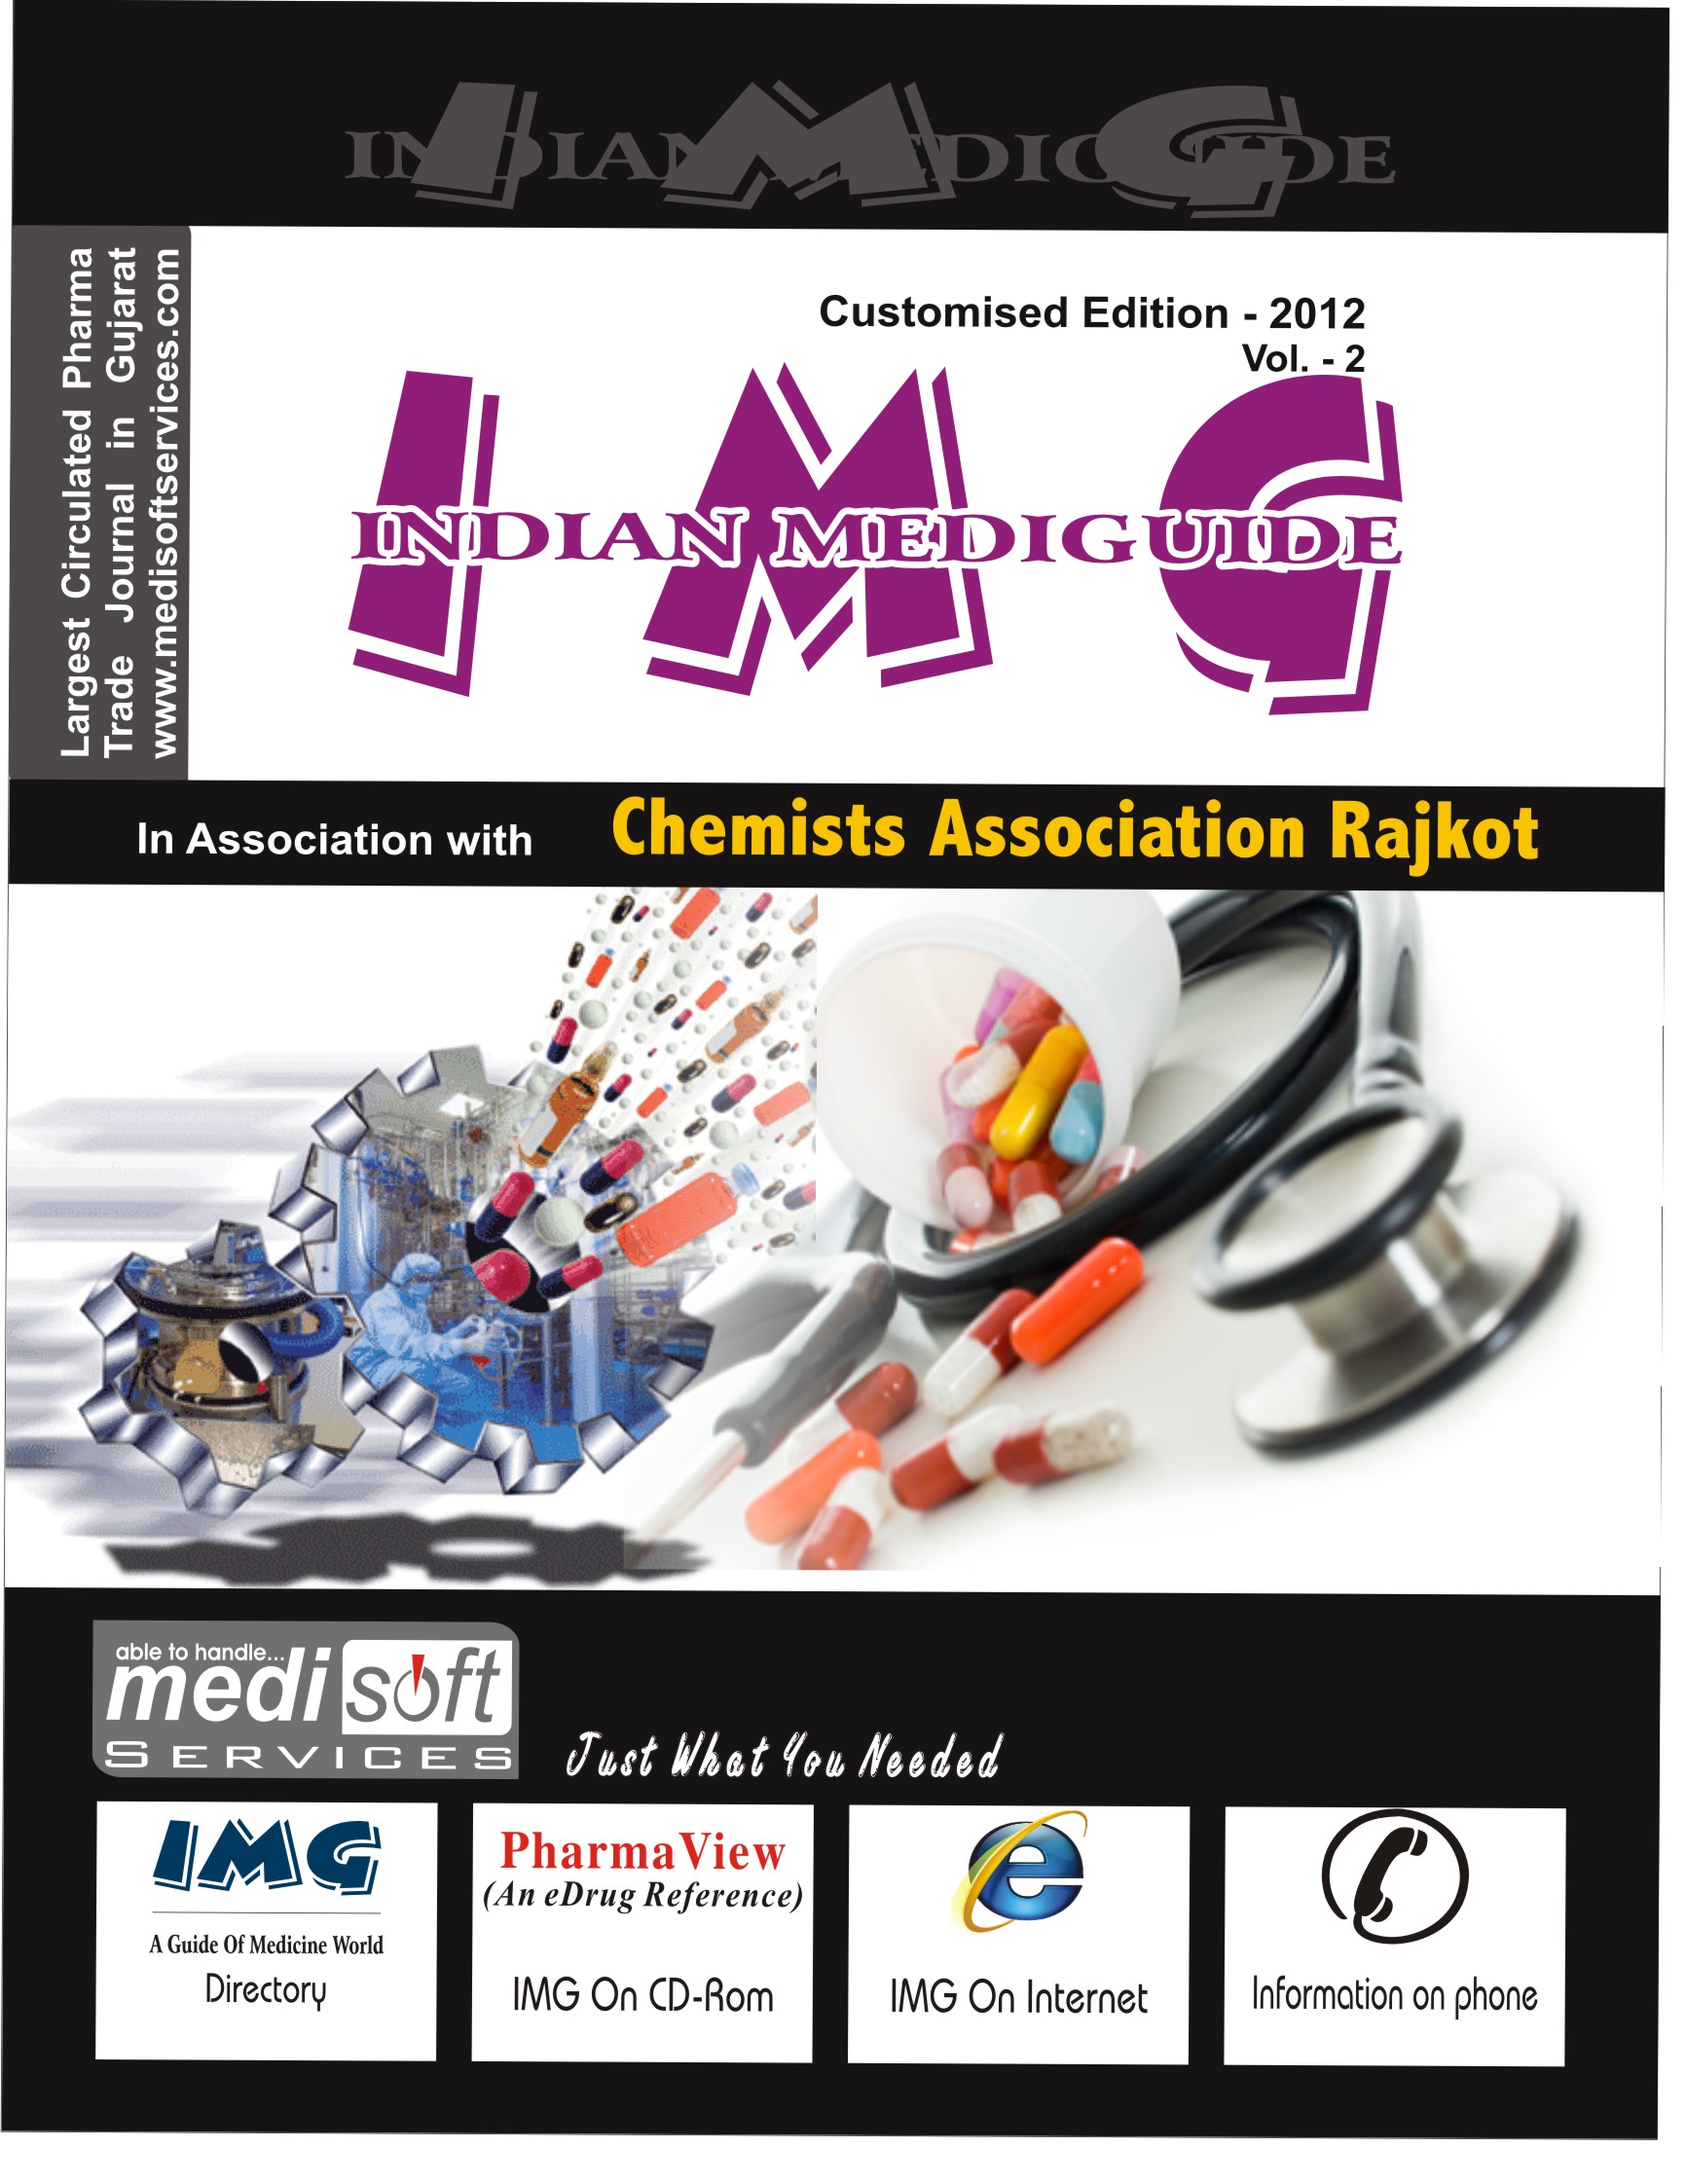 Chemists Association Rajkot